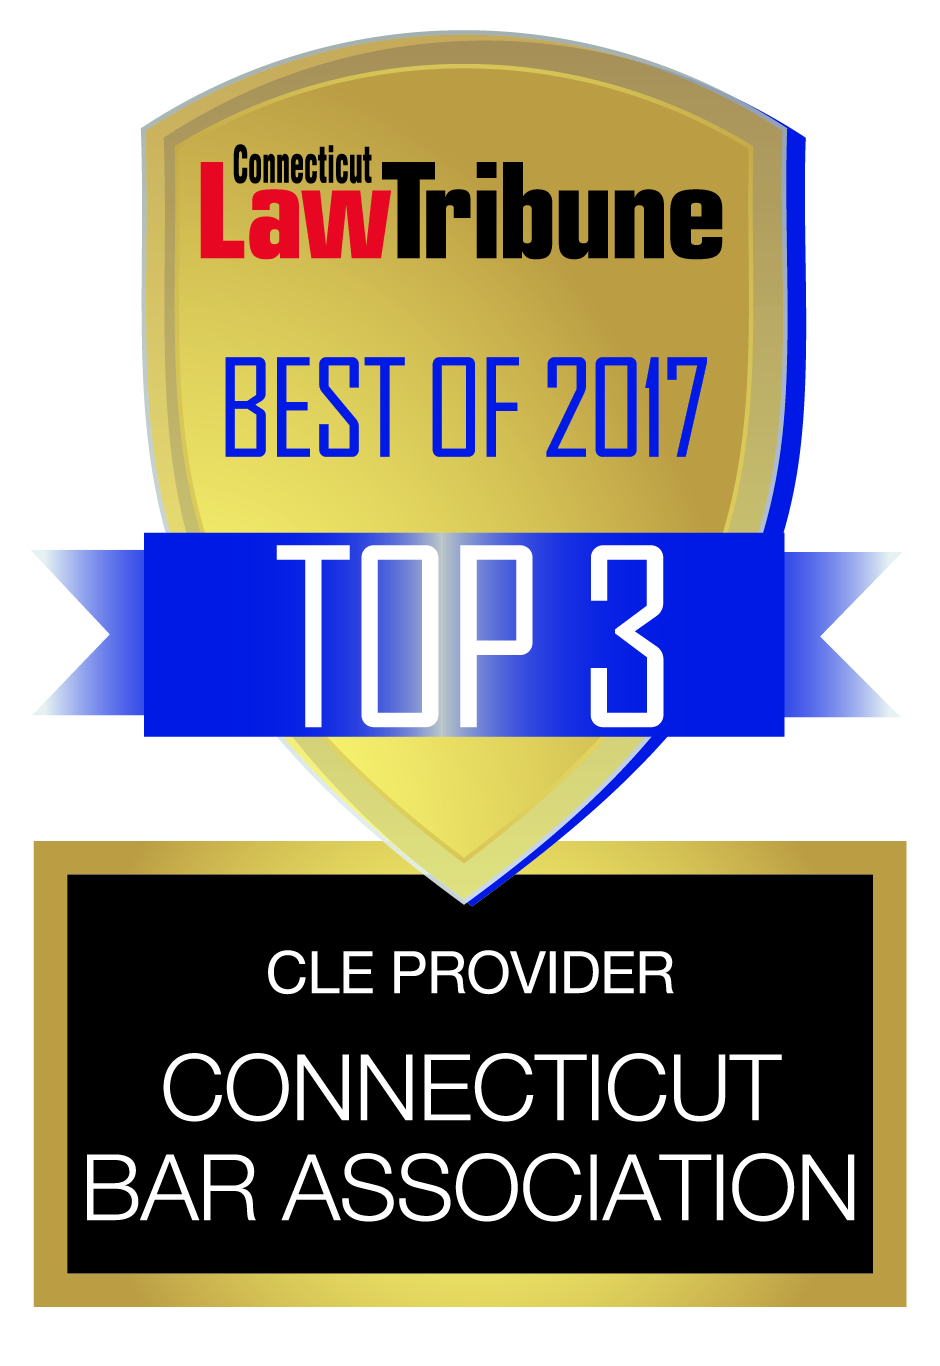 Connecticut Law Tribune 2017 Top 3